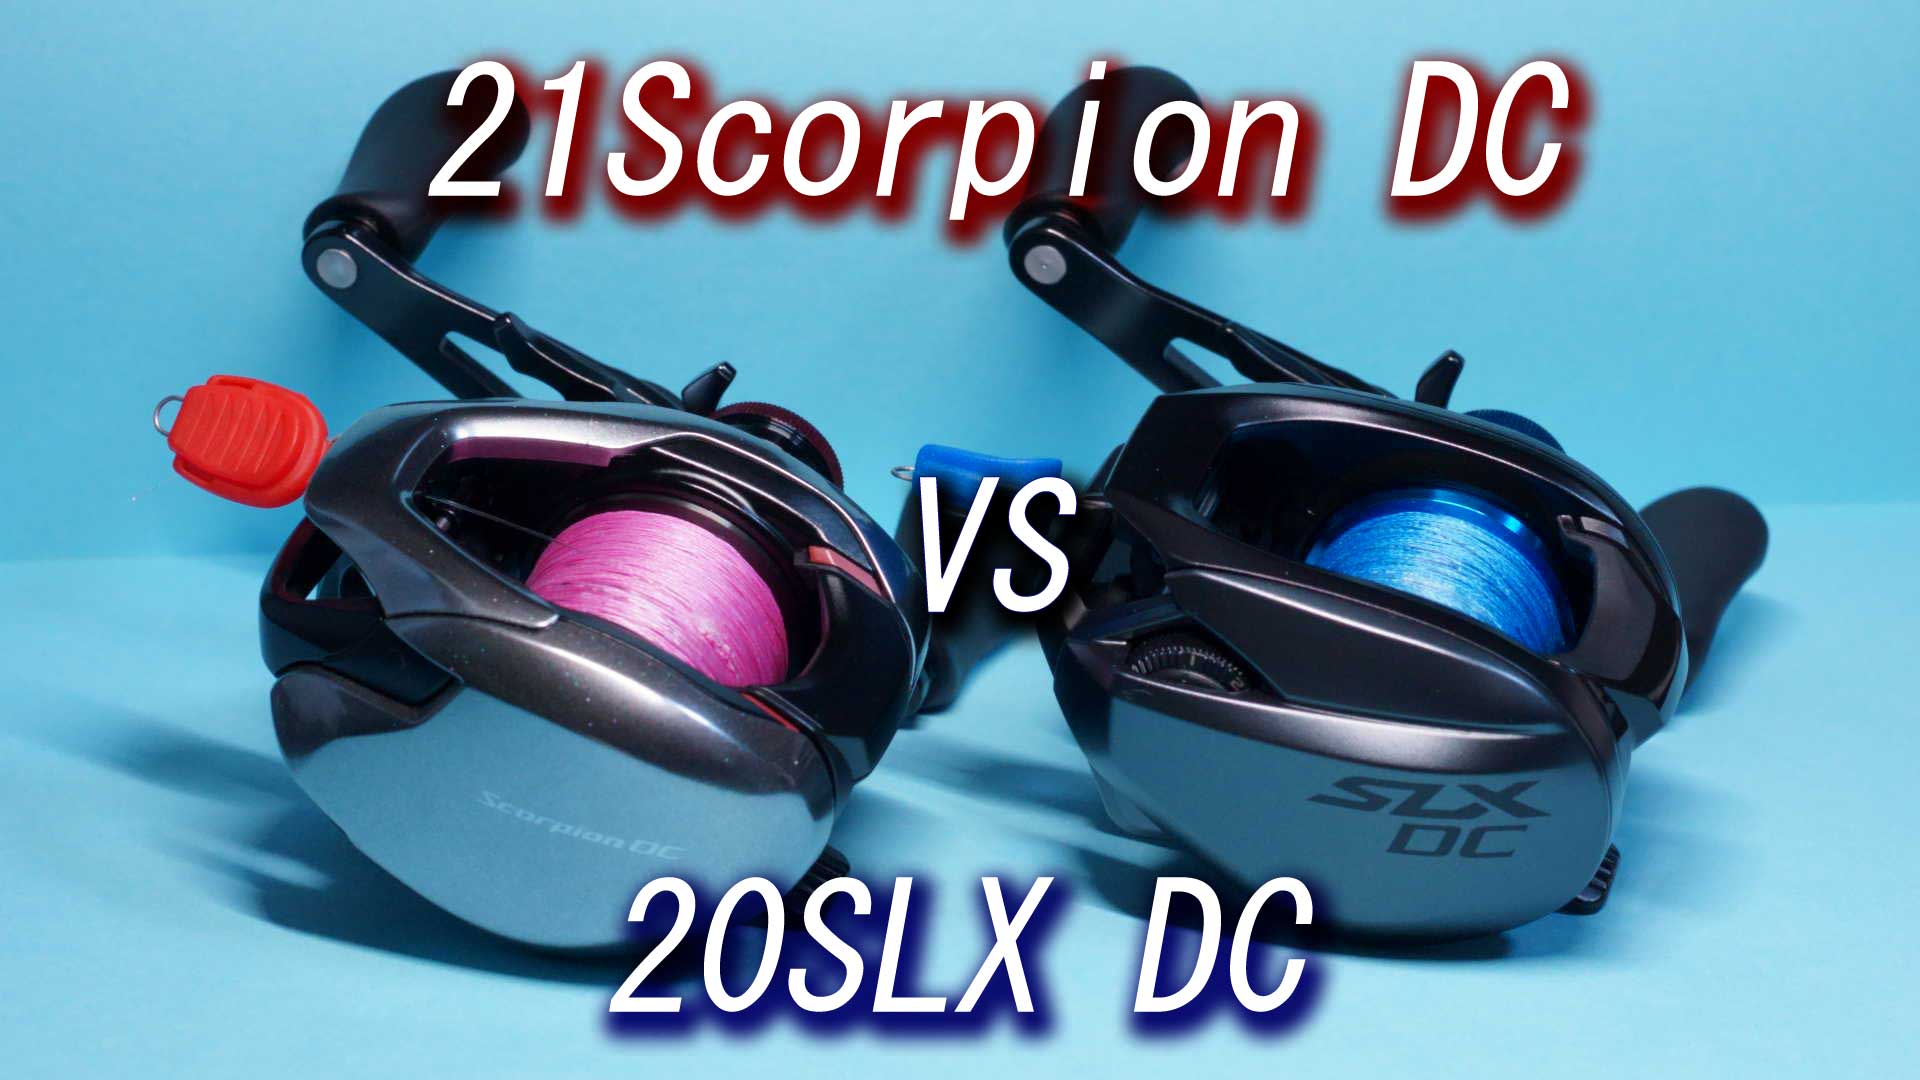 シマノ 21スコーピオン DC vs 20SLX DC コスパ徹底比較